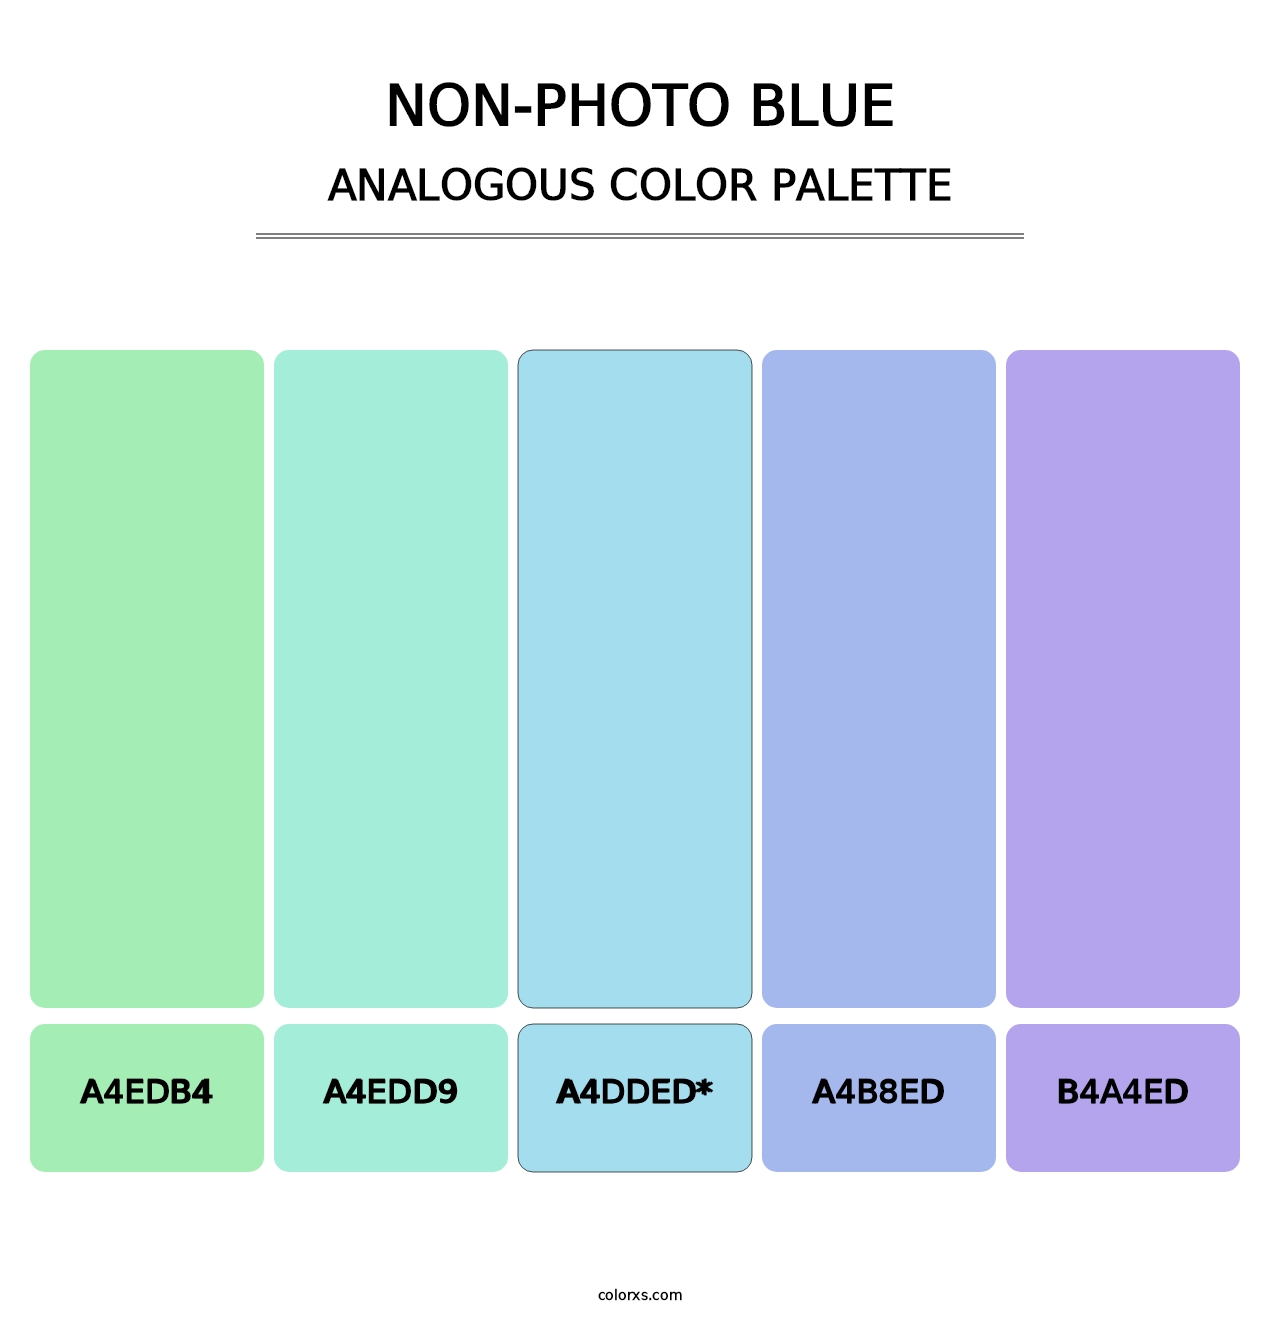 Non-photo Blue - Analogous Color Palette